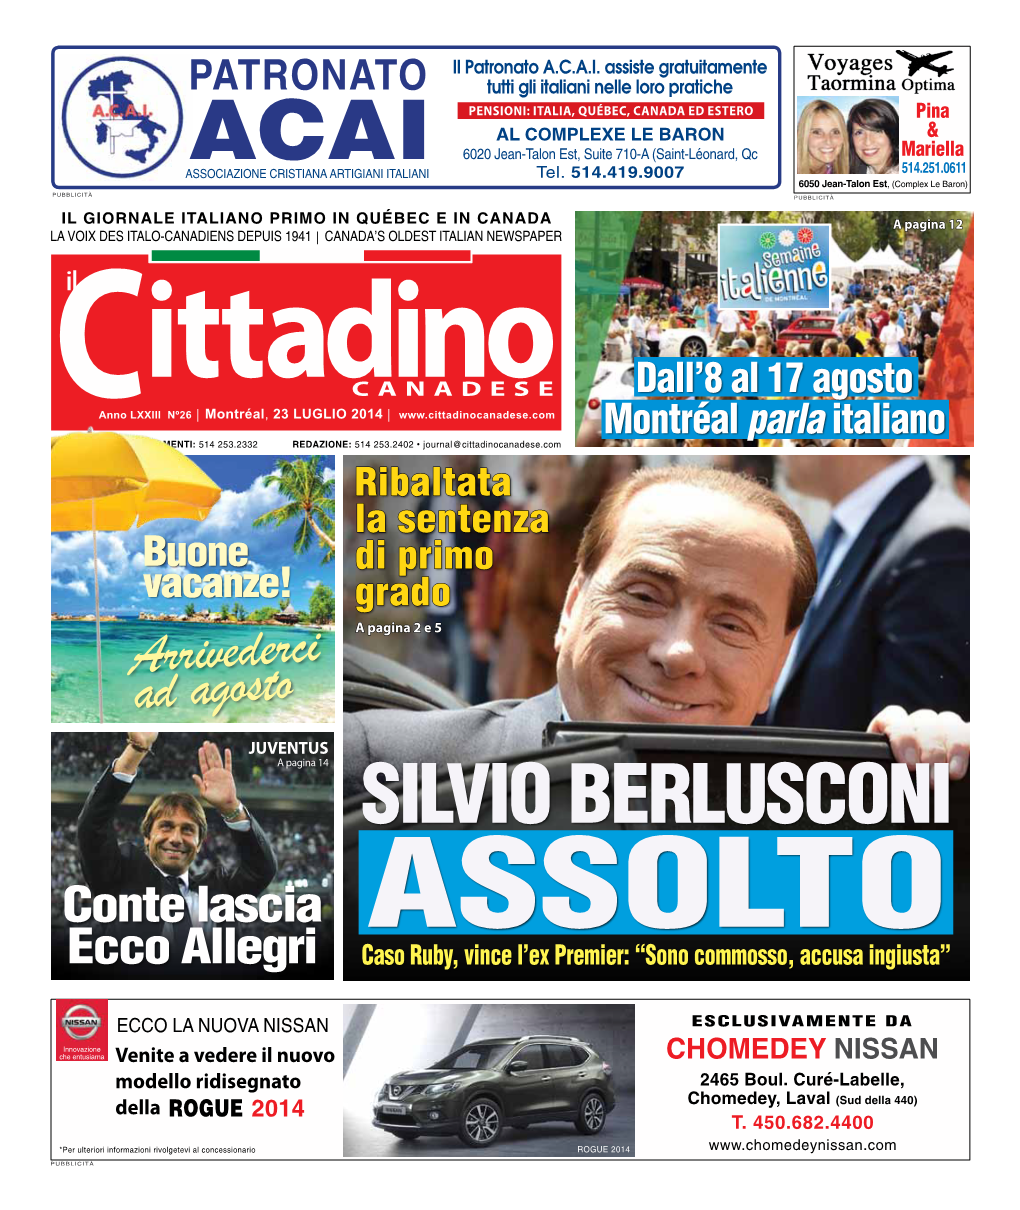 SILVIO Berlusconi Conte Lascia Assolto Ecco Allegri Caso Ruby, Vince L’Ex Premier: “Sono Commosso, Accusa Ingiusta”